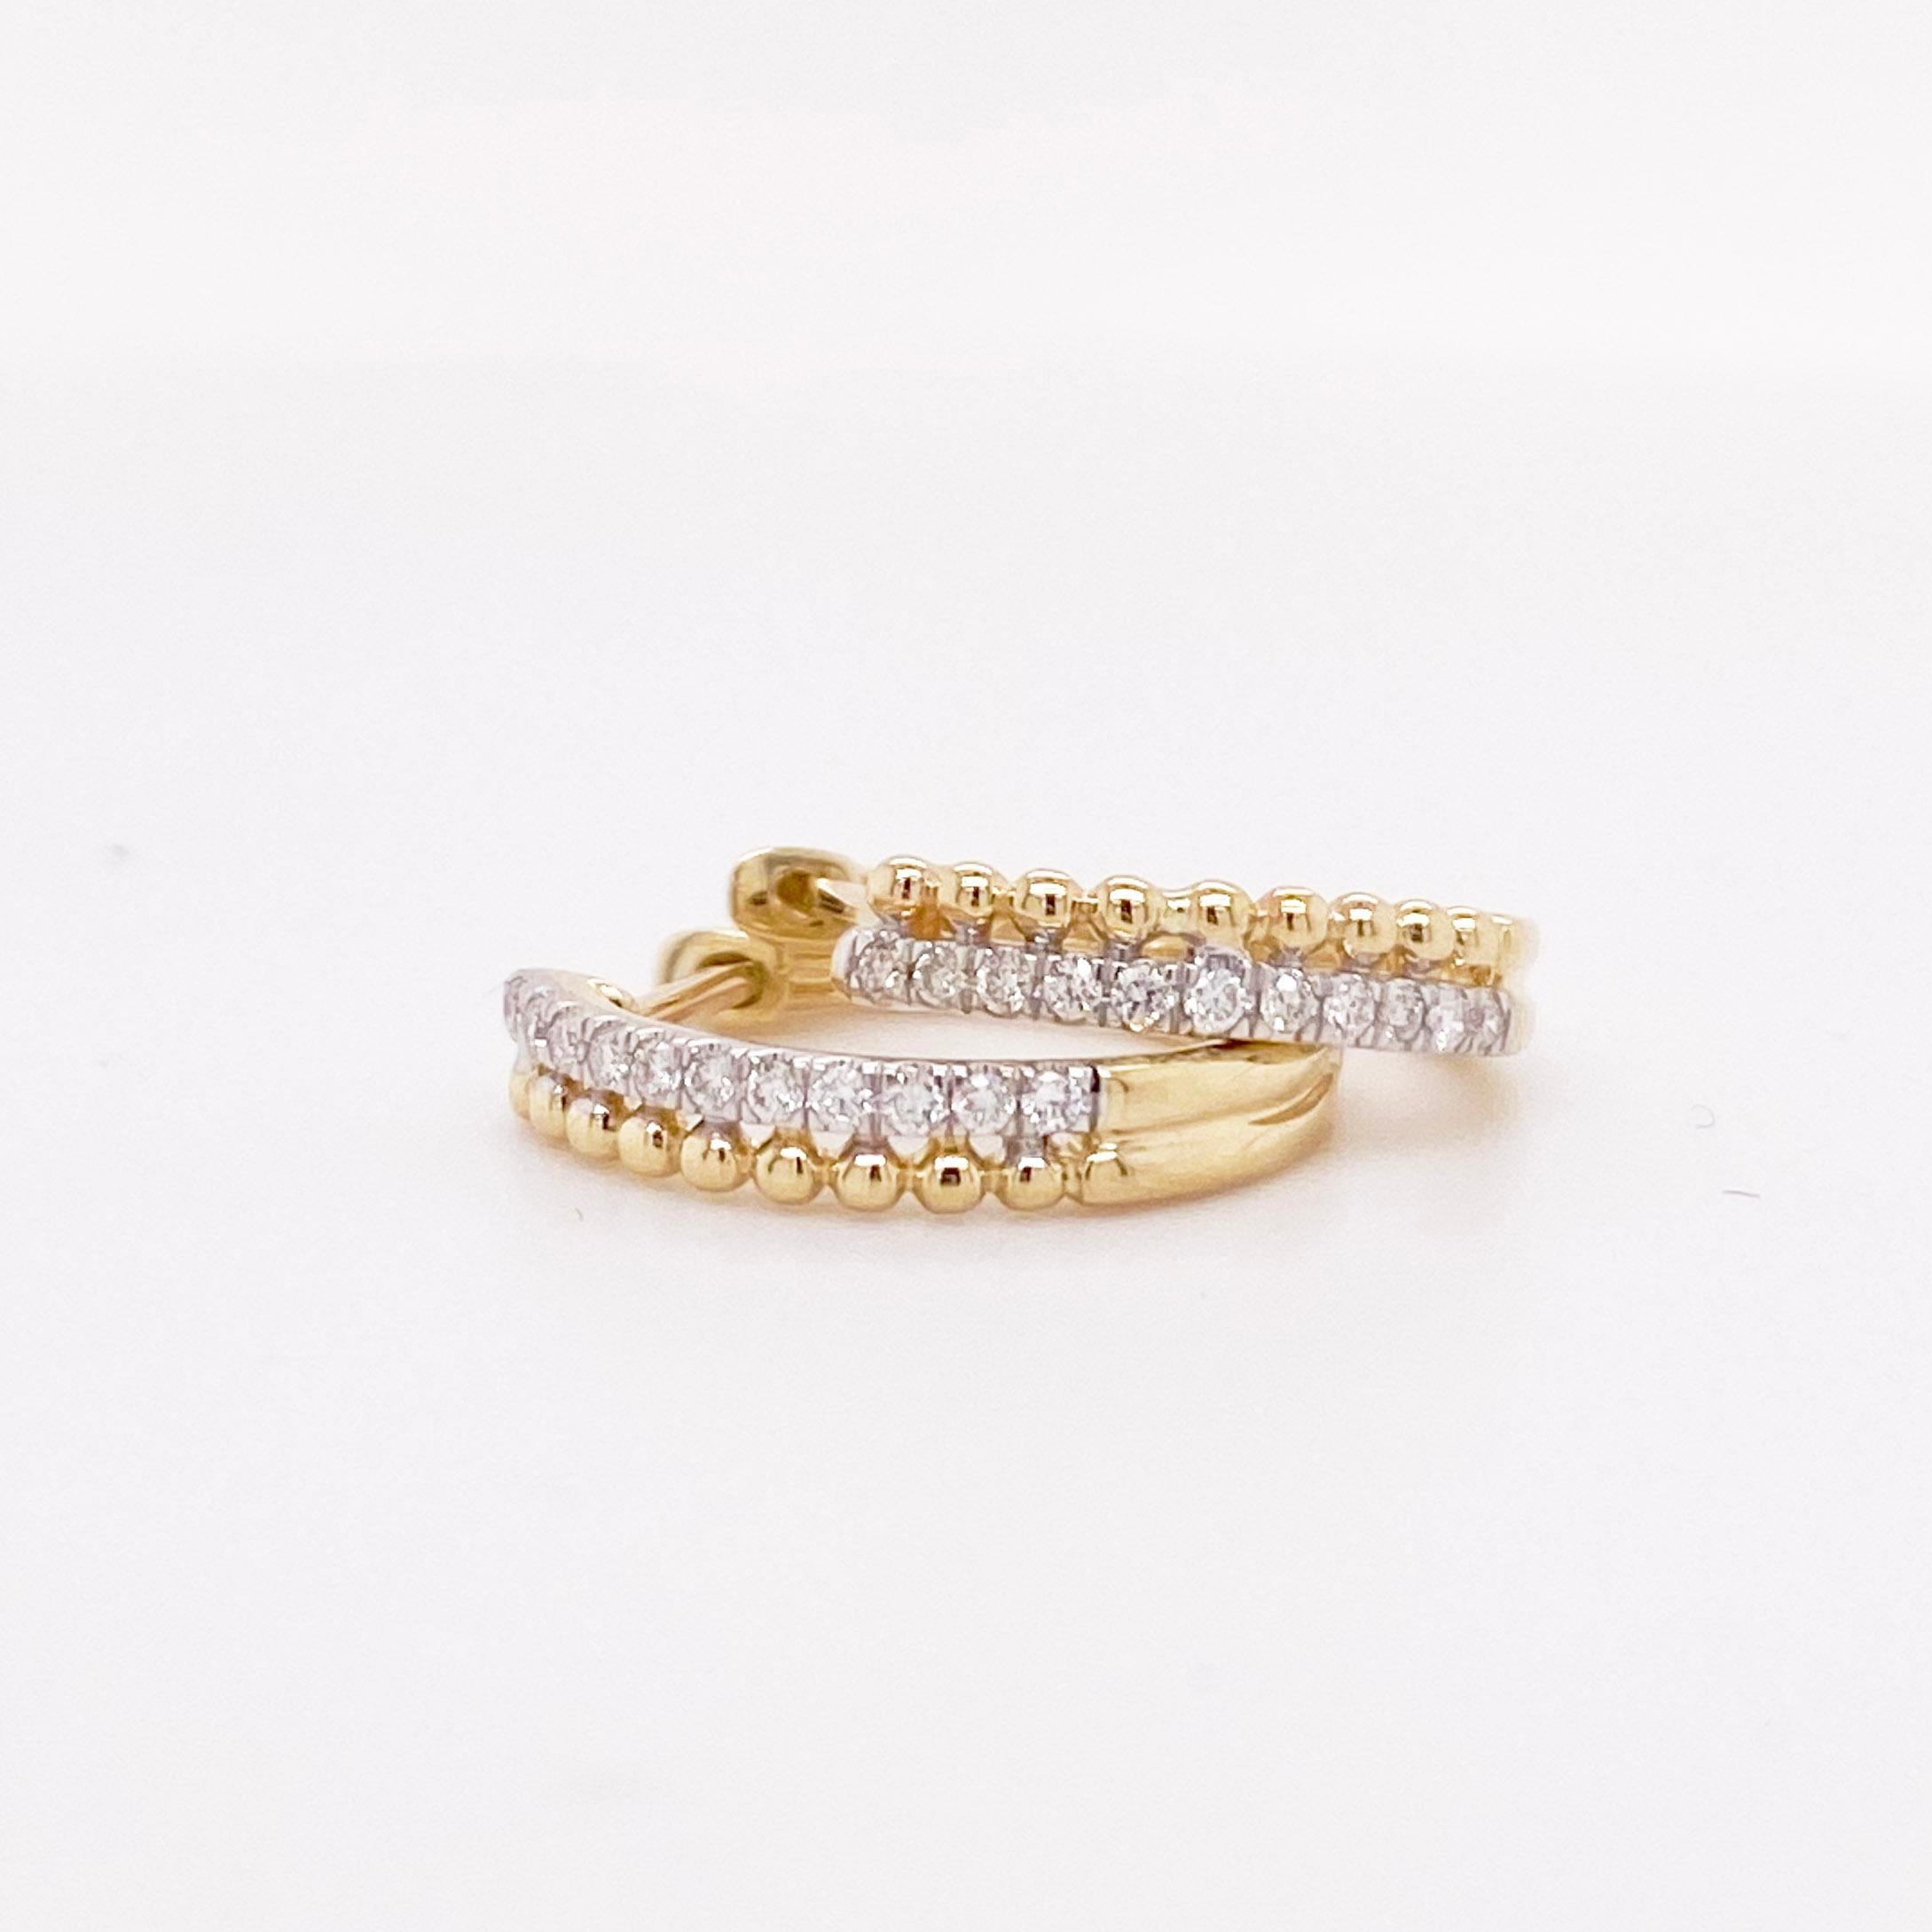 Die atemberaubenden Diamant-Huggy-Ohrringe haben ein zweireihiges Design mit einer goldenen Perlenreihe neben einer gepflasterten Diamantreihe. Das Design ist zierlich und modern! Diese Ohrringe sehen nicht nur alleine toll aus, sondern lassen sich